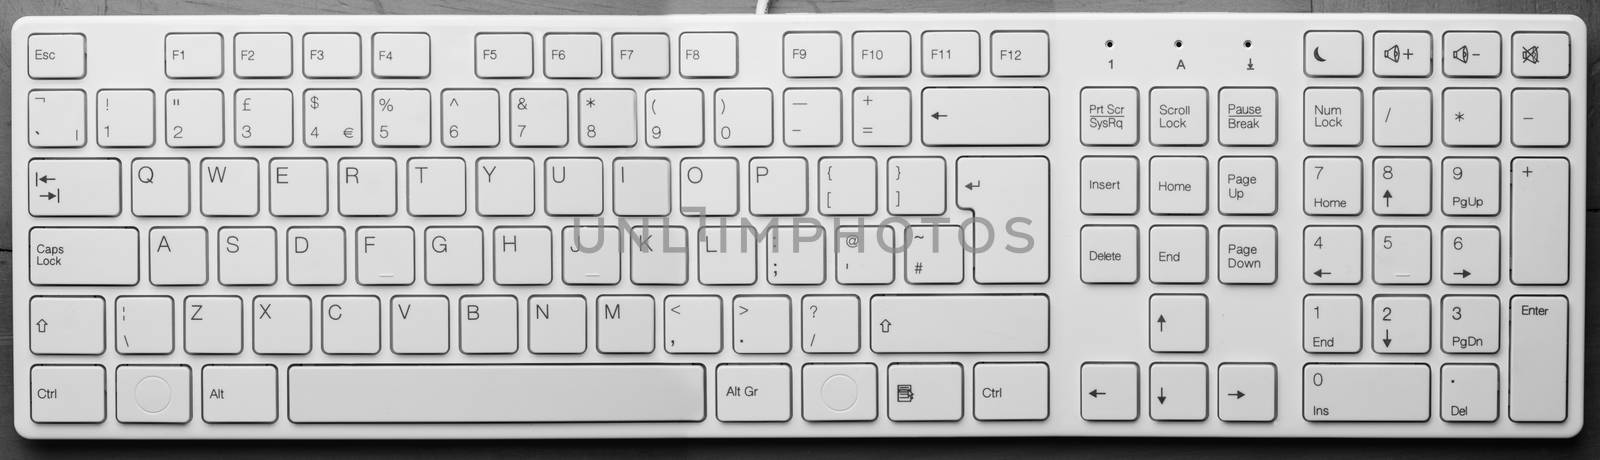 Large white keyboard